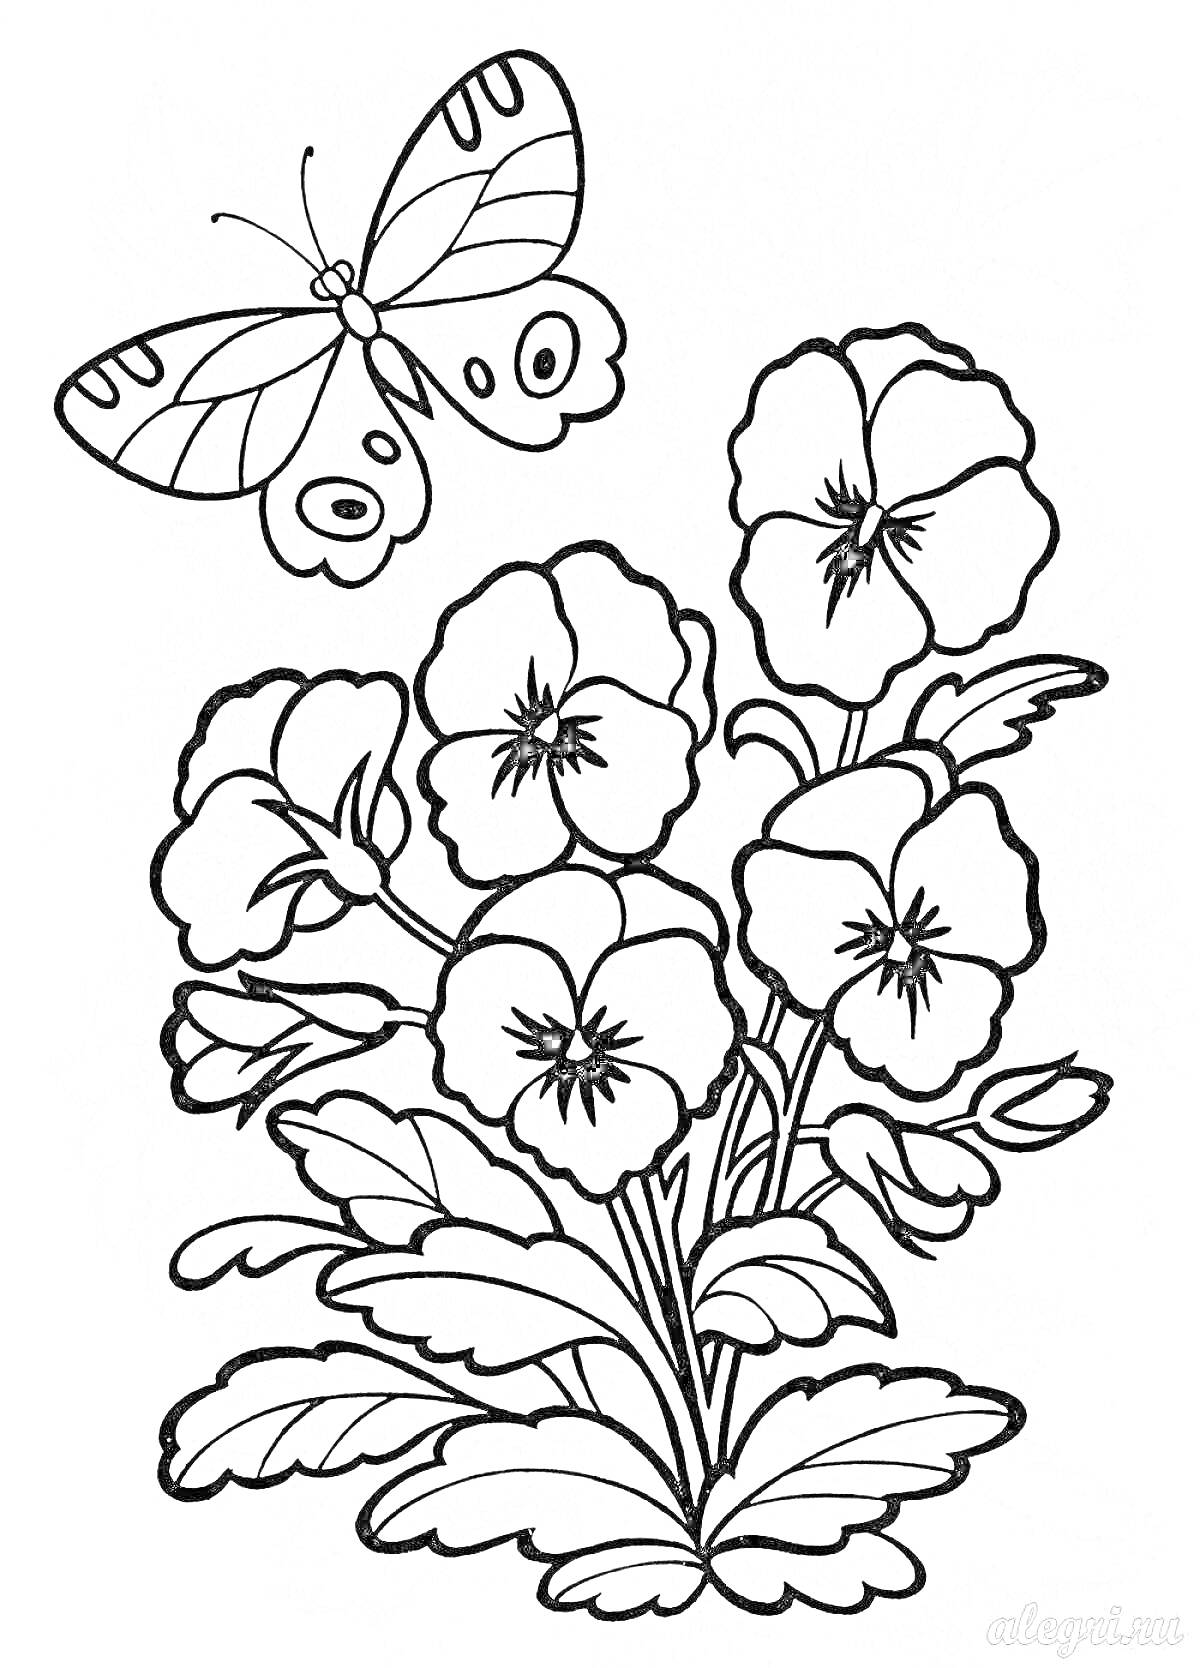 Раскраска Рисунок с цветами и бабочкой, состоящими из трех больших цветов с листьями снизу и большой бабочки, парящей над ними.